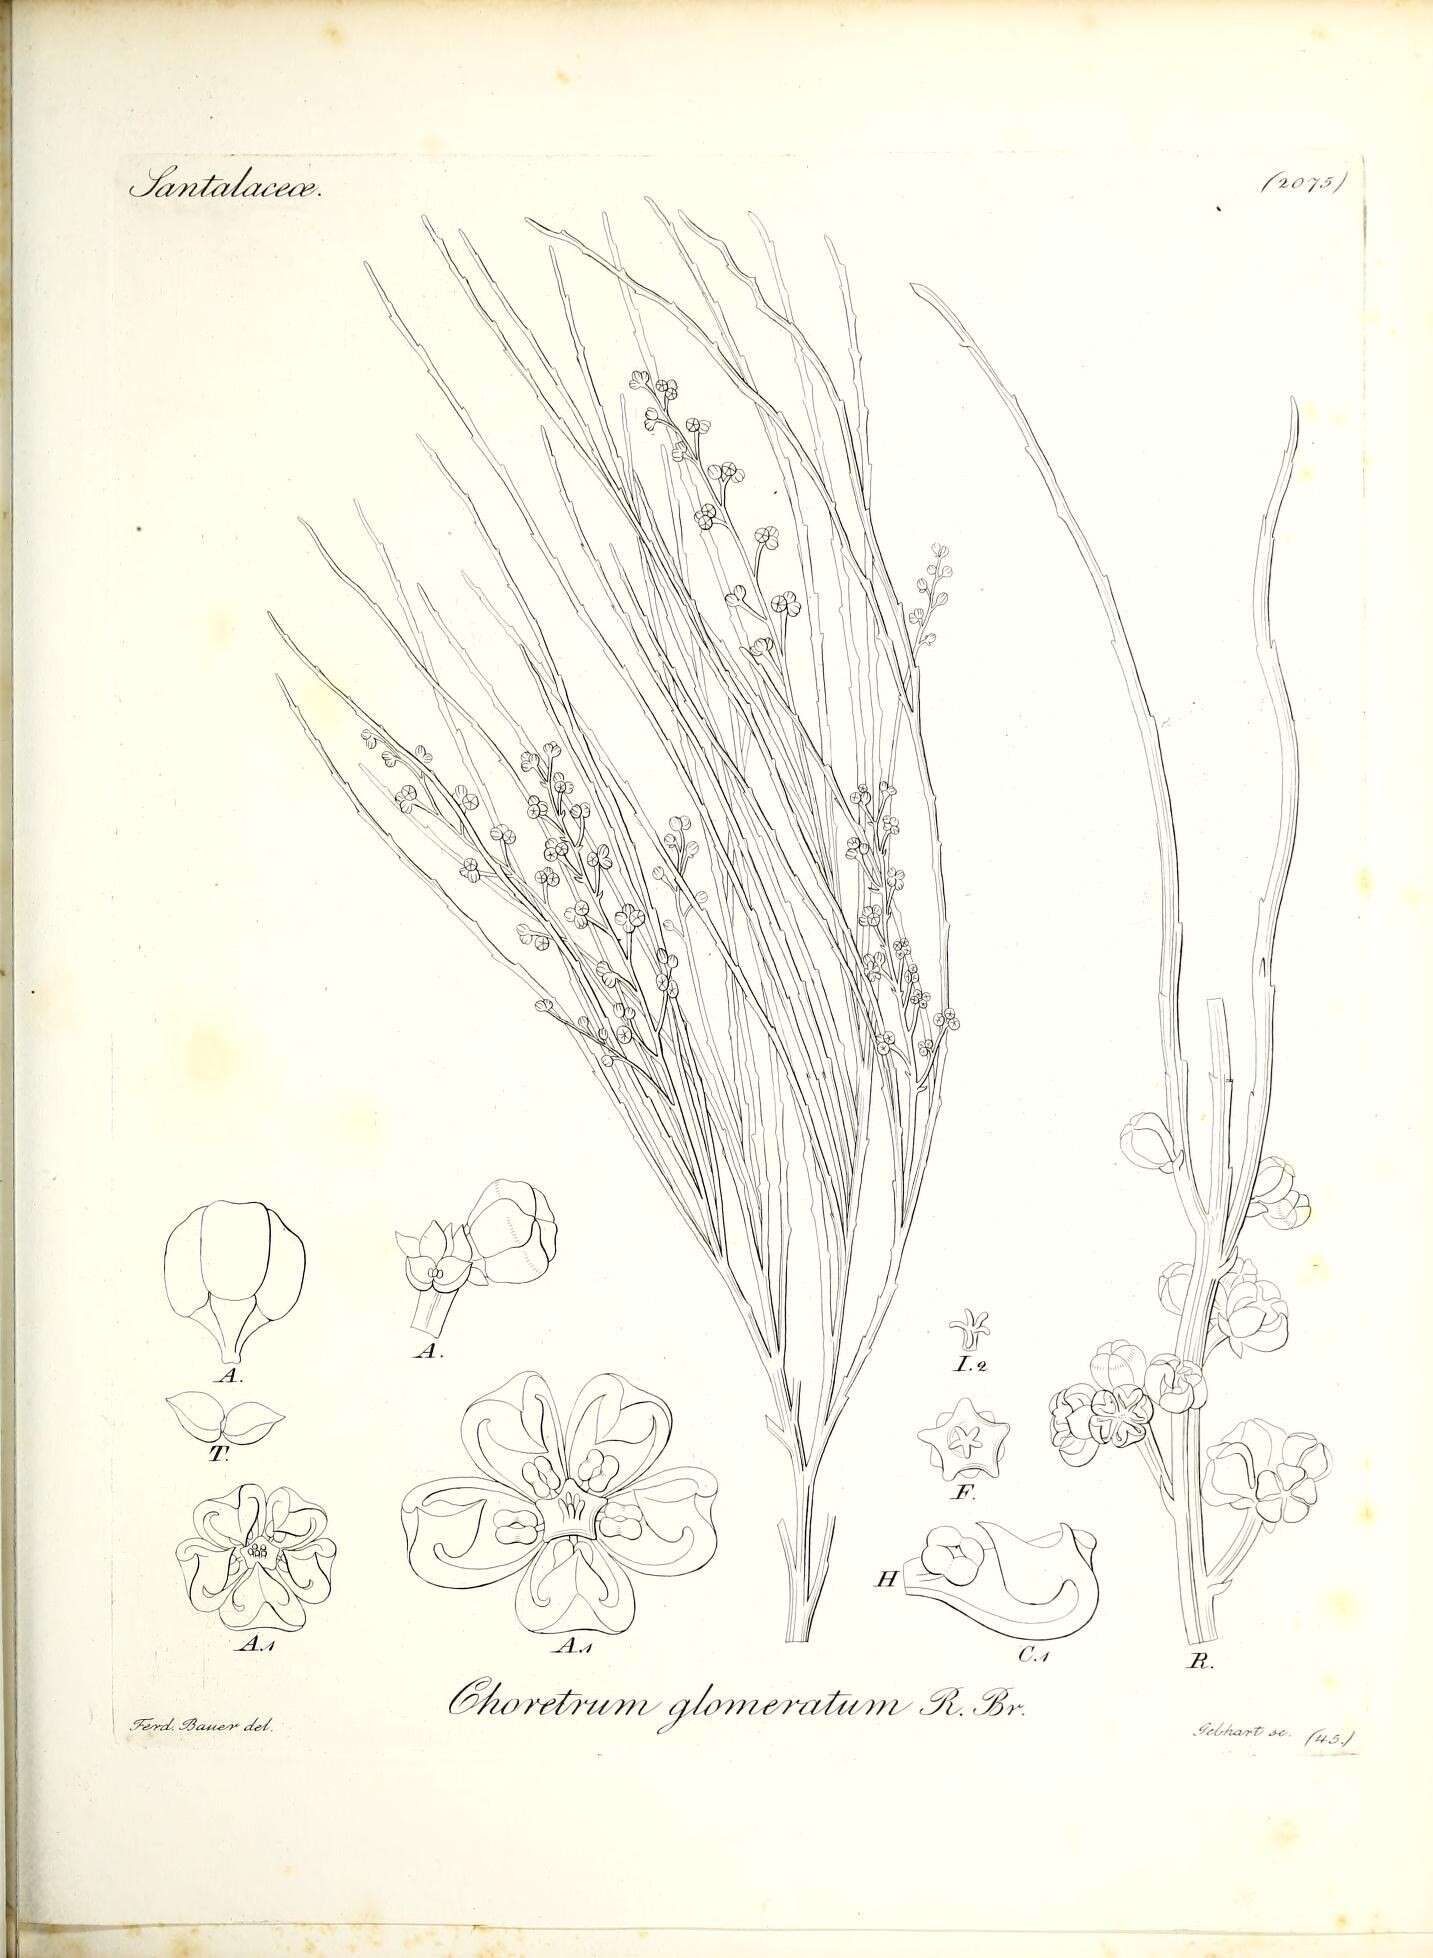 Image of Choretrum glomeratum R. Br.